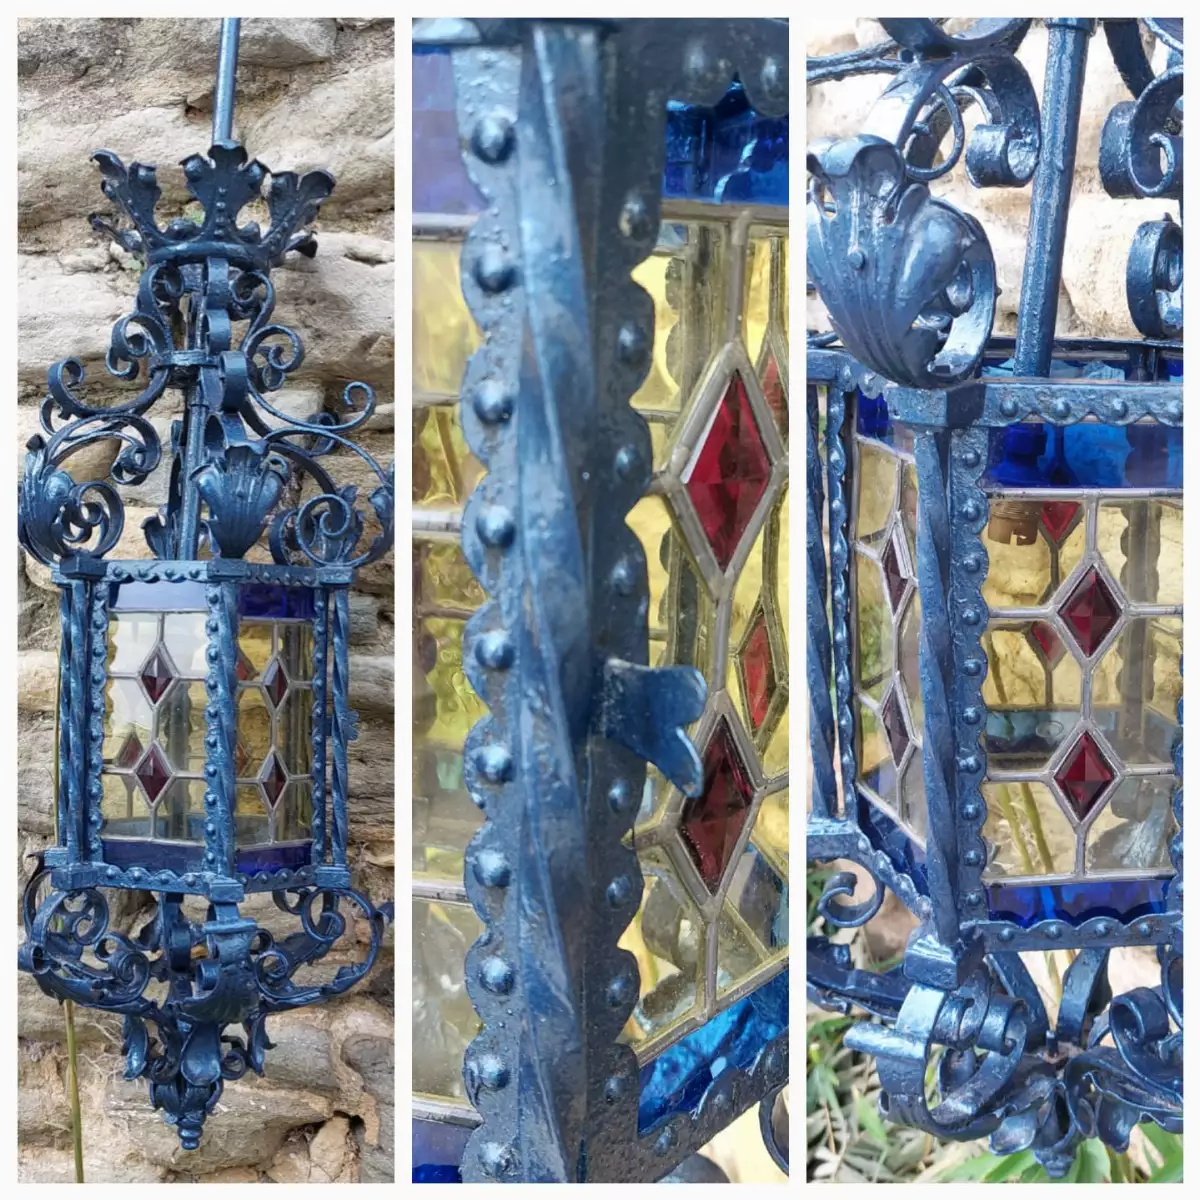 Grande lanterne en fer forgé et vitraux authentiques